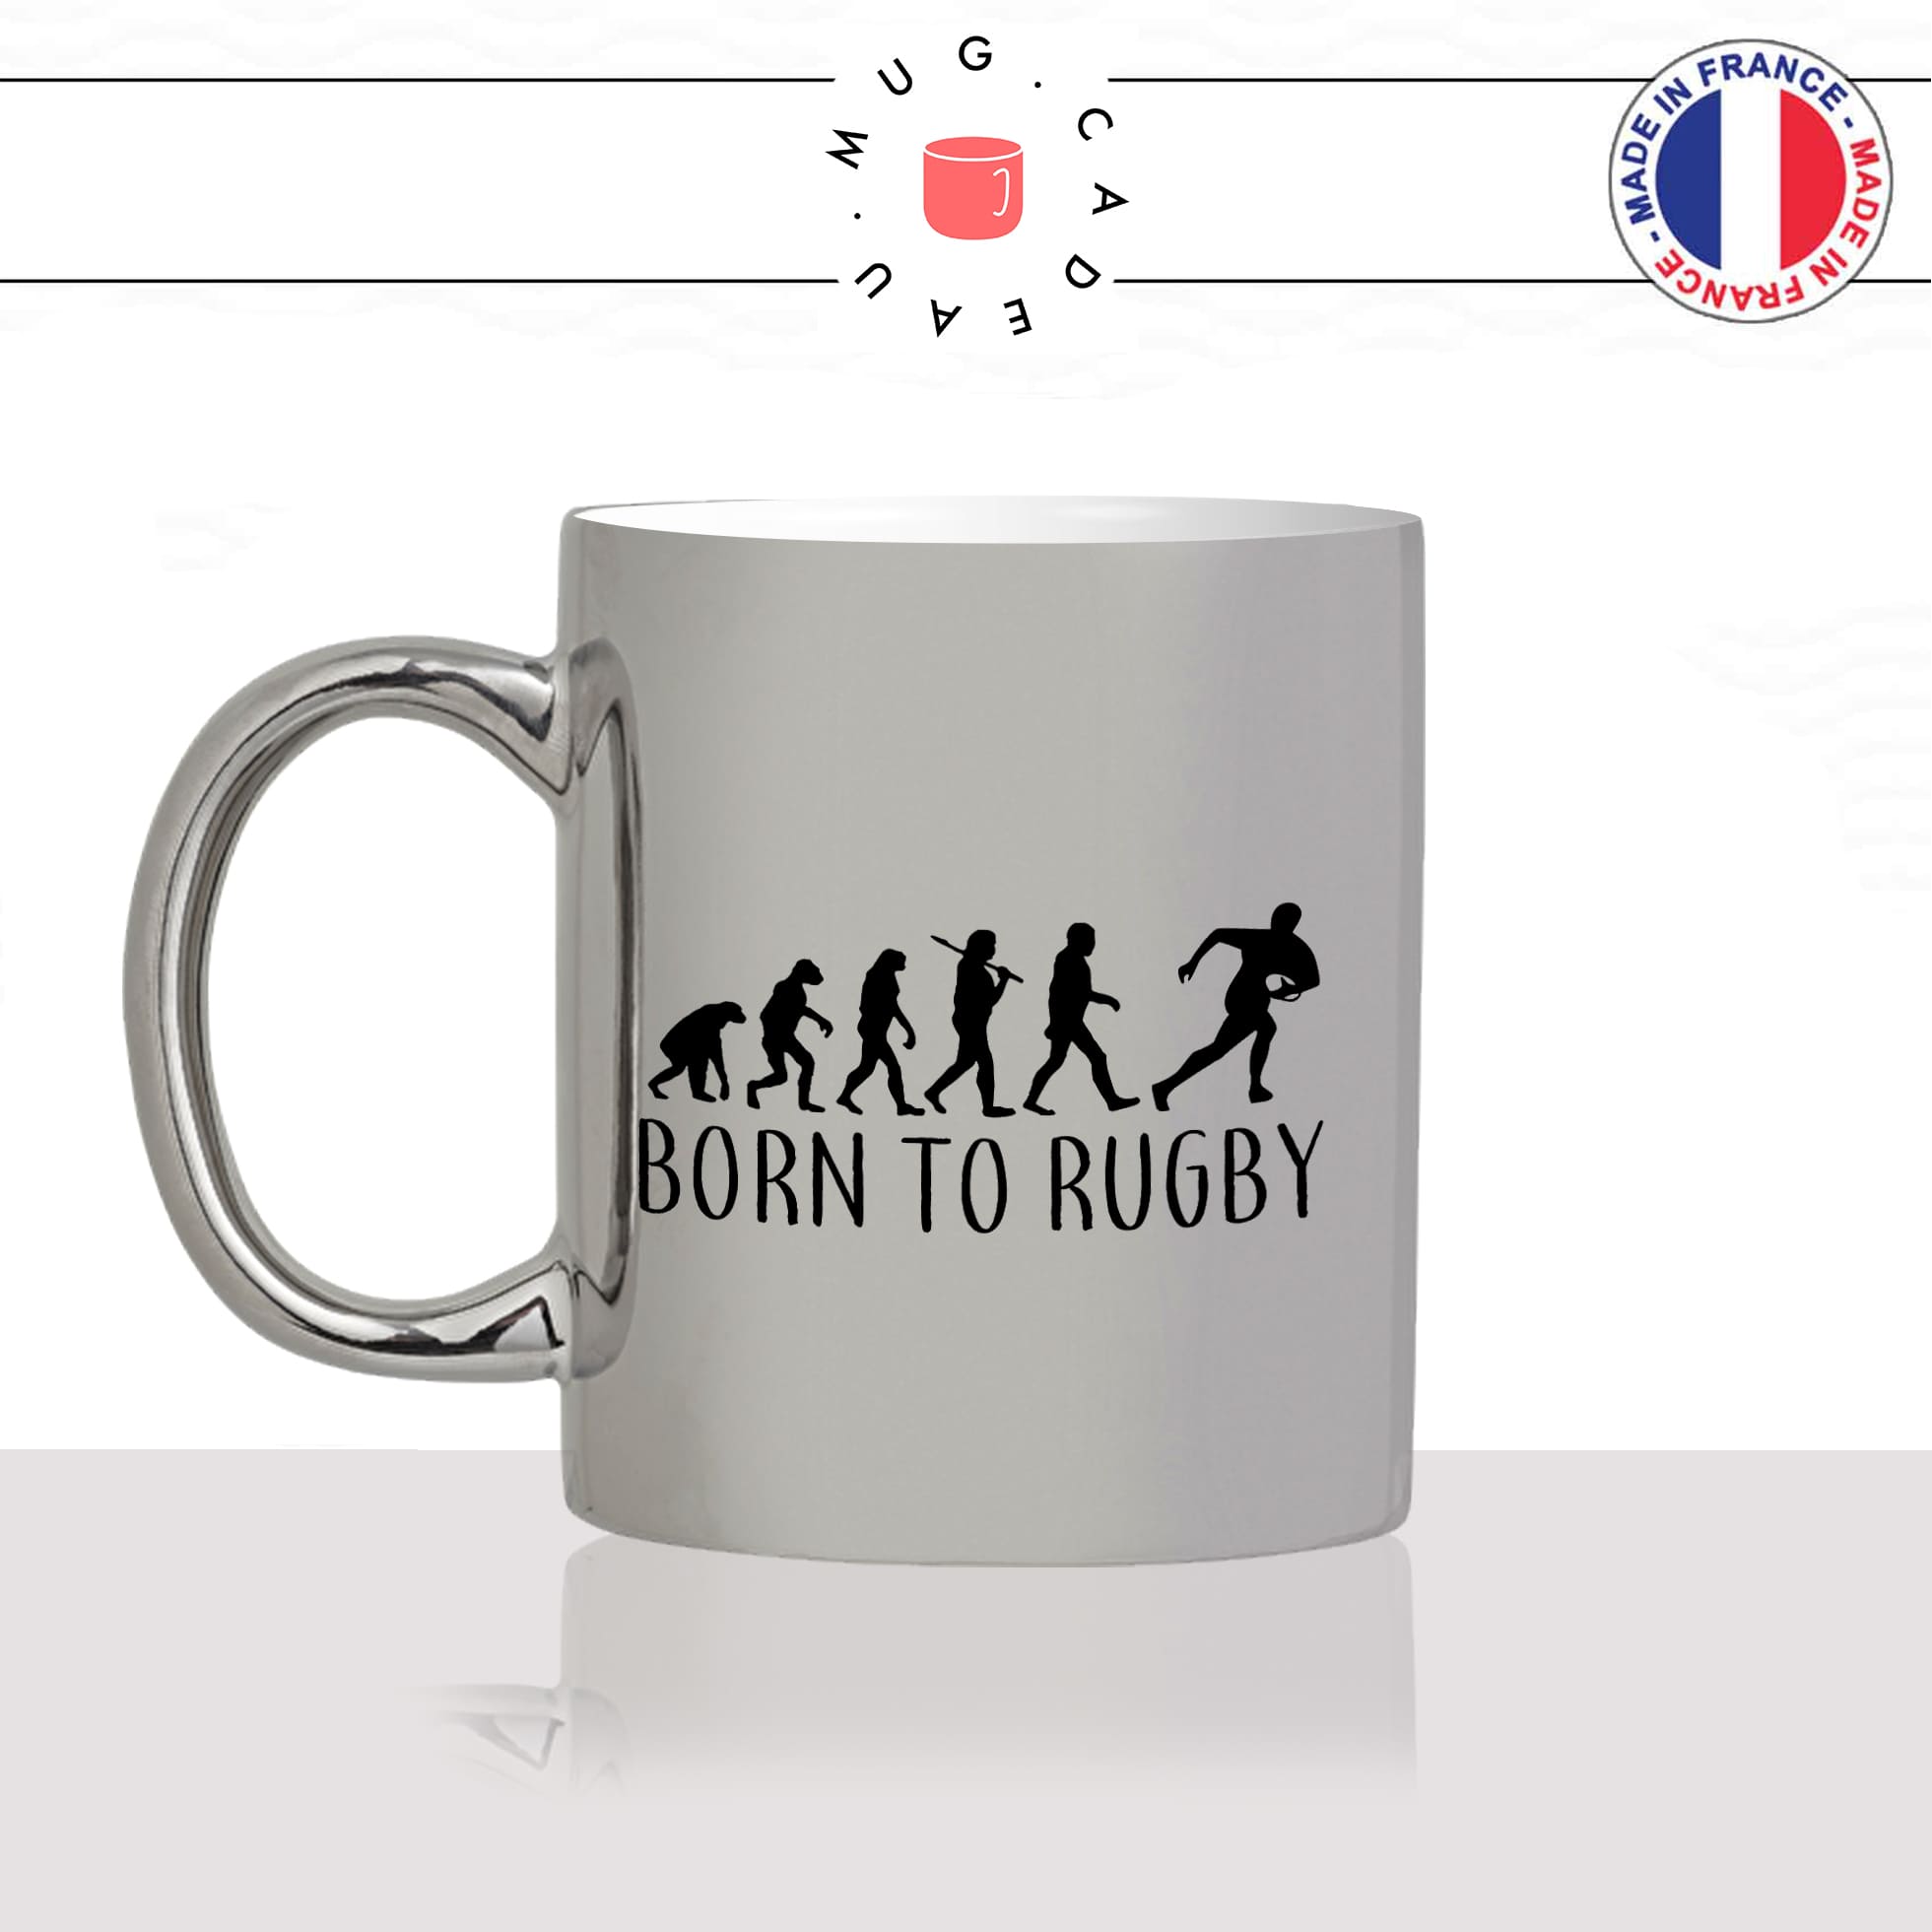 mug-tasse-argent-argenté-silver-born-to-rubgy-evolution-humaine-singe-sport-6-nations-rugbyman-humour-idée-cadeau-fun-cool-café-thé